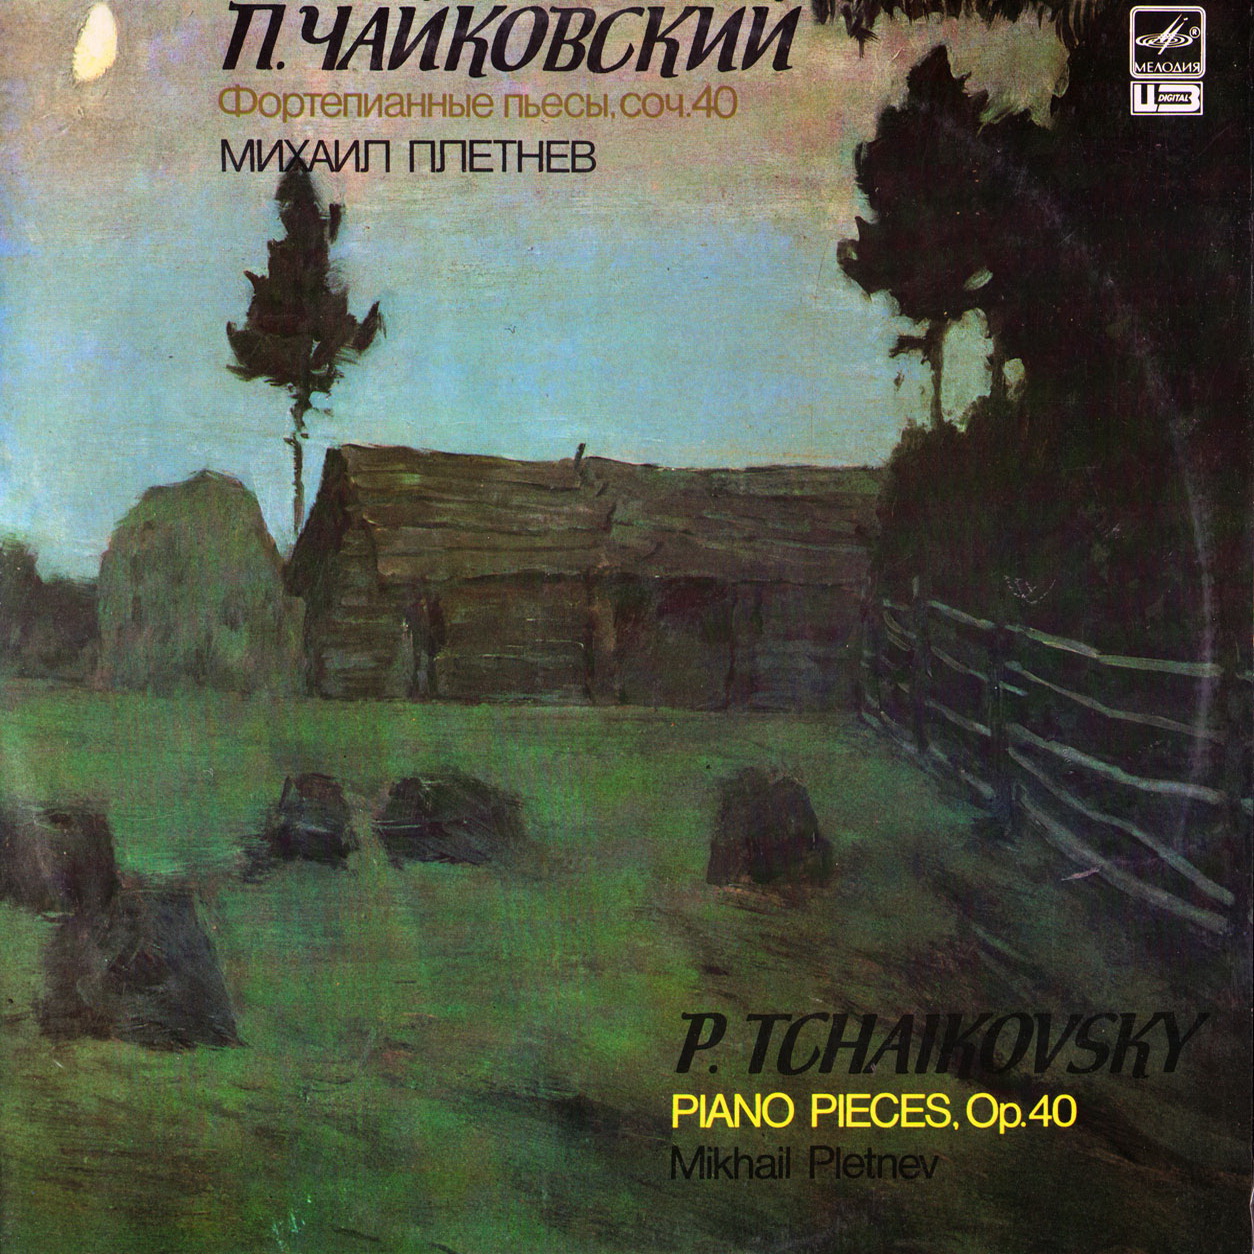 П. Чайковский: Двенадцать пьес средней трудности, соч. 40 (М. Плетнев, ф-но)